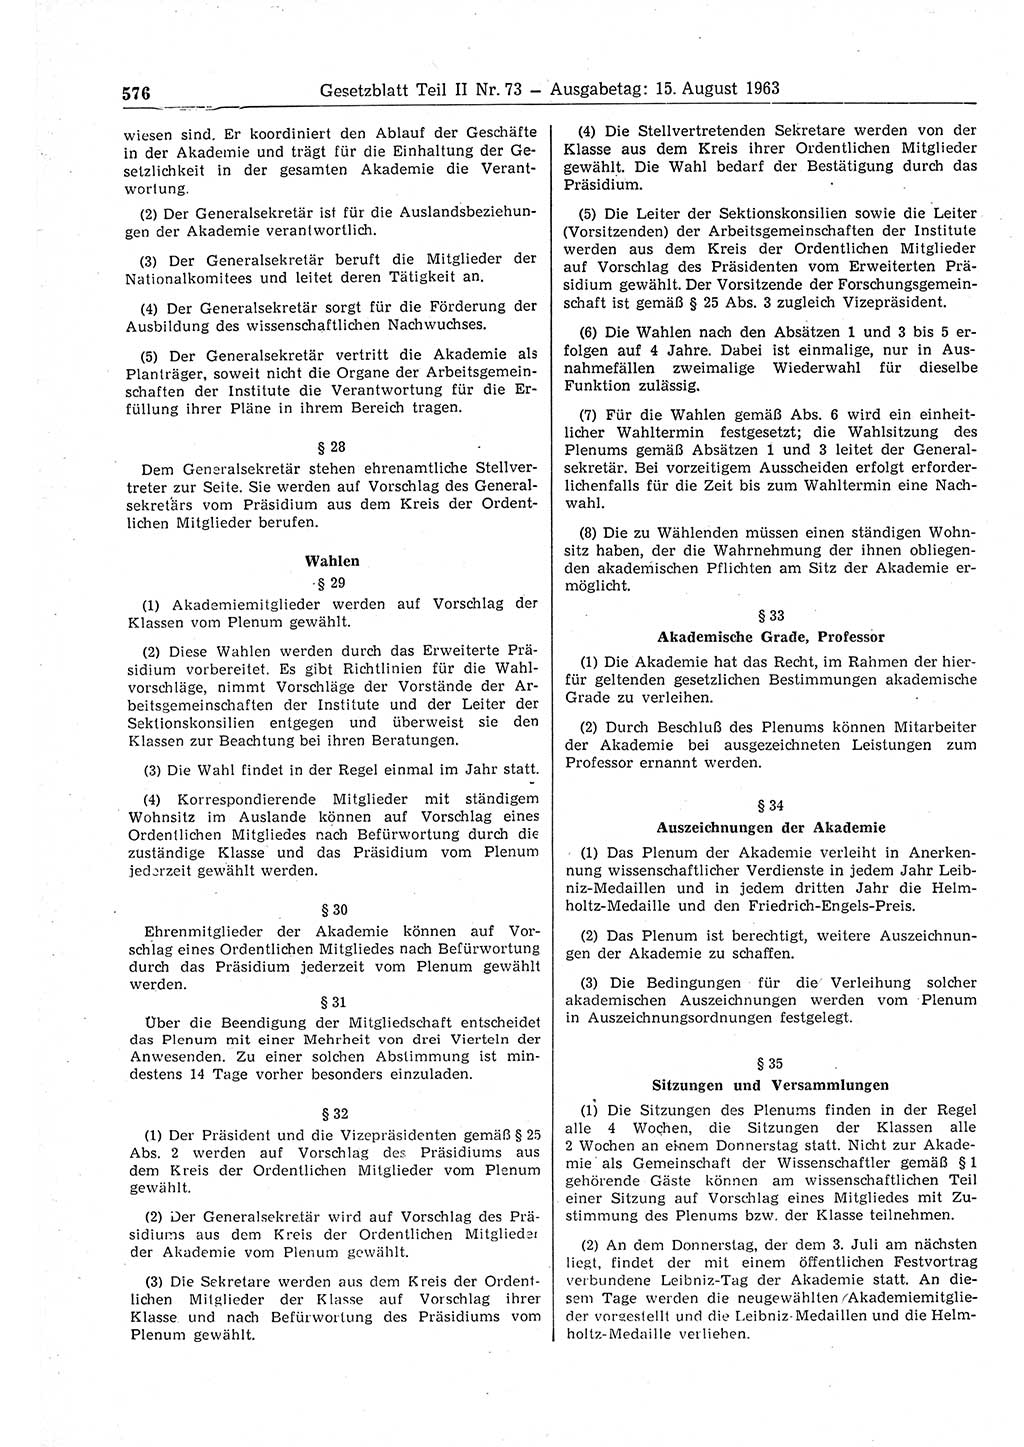 Gesetzblatt (GBl.) der Deutschen Demokratischen Republik (DDR) Teil ⅠⅠ 1963, Seite 576 (GBl. DDR ⅠⅠ 1963, S. 576)